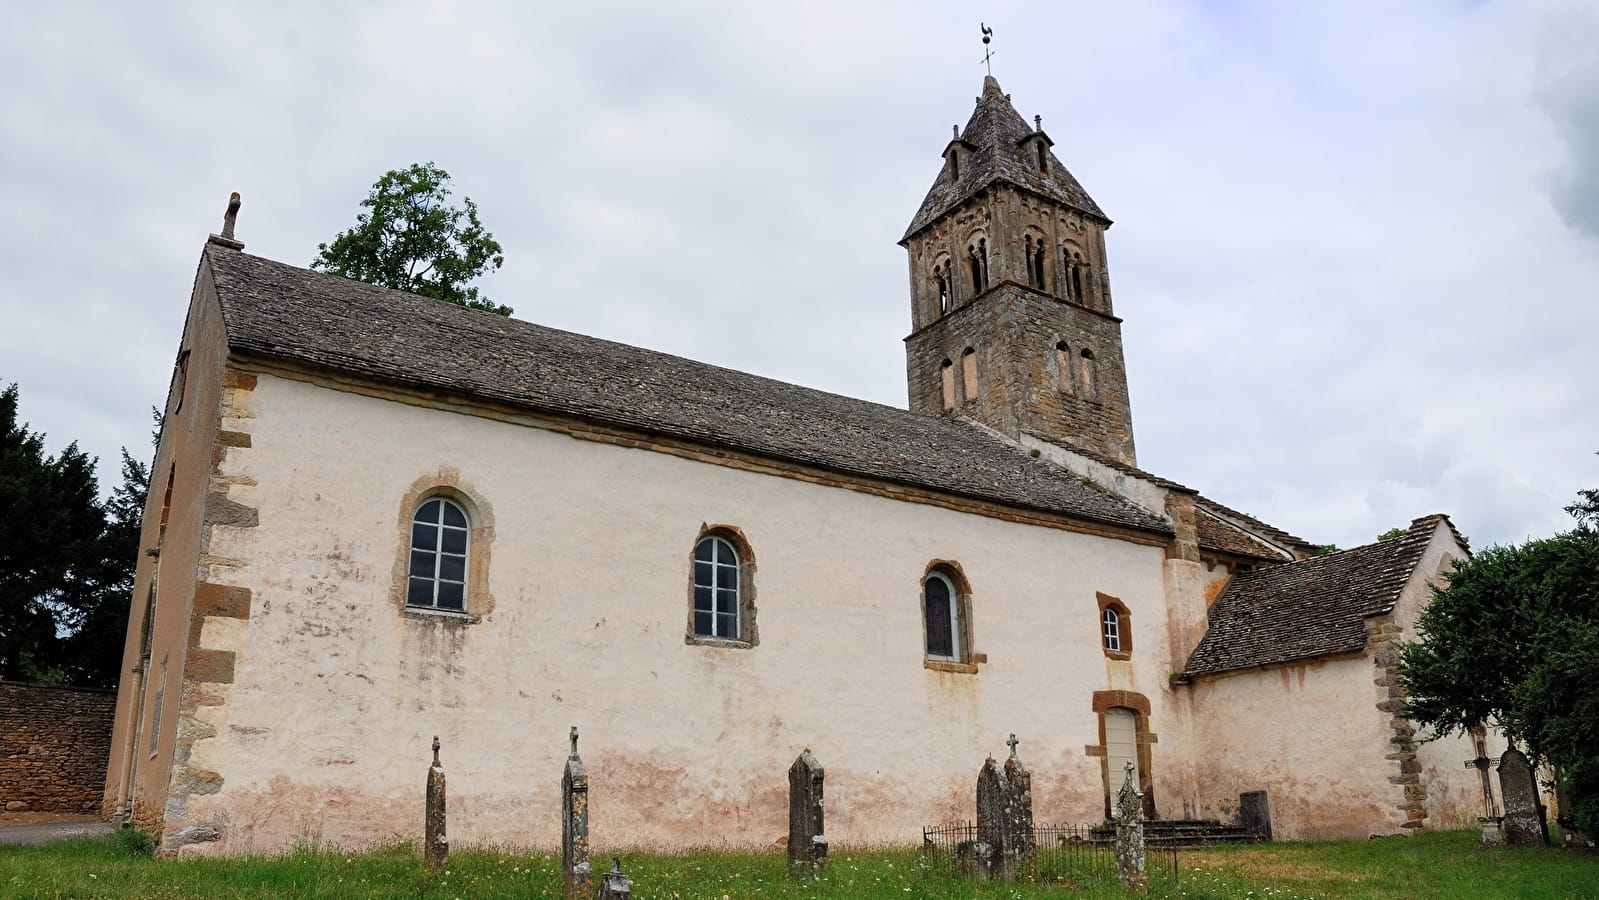 Eglise Saint-Donat et tombeau de Lamartine